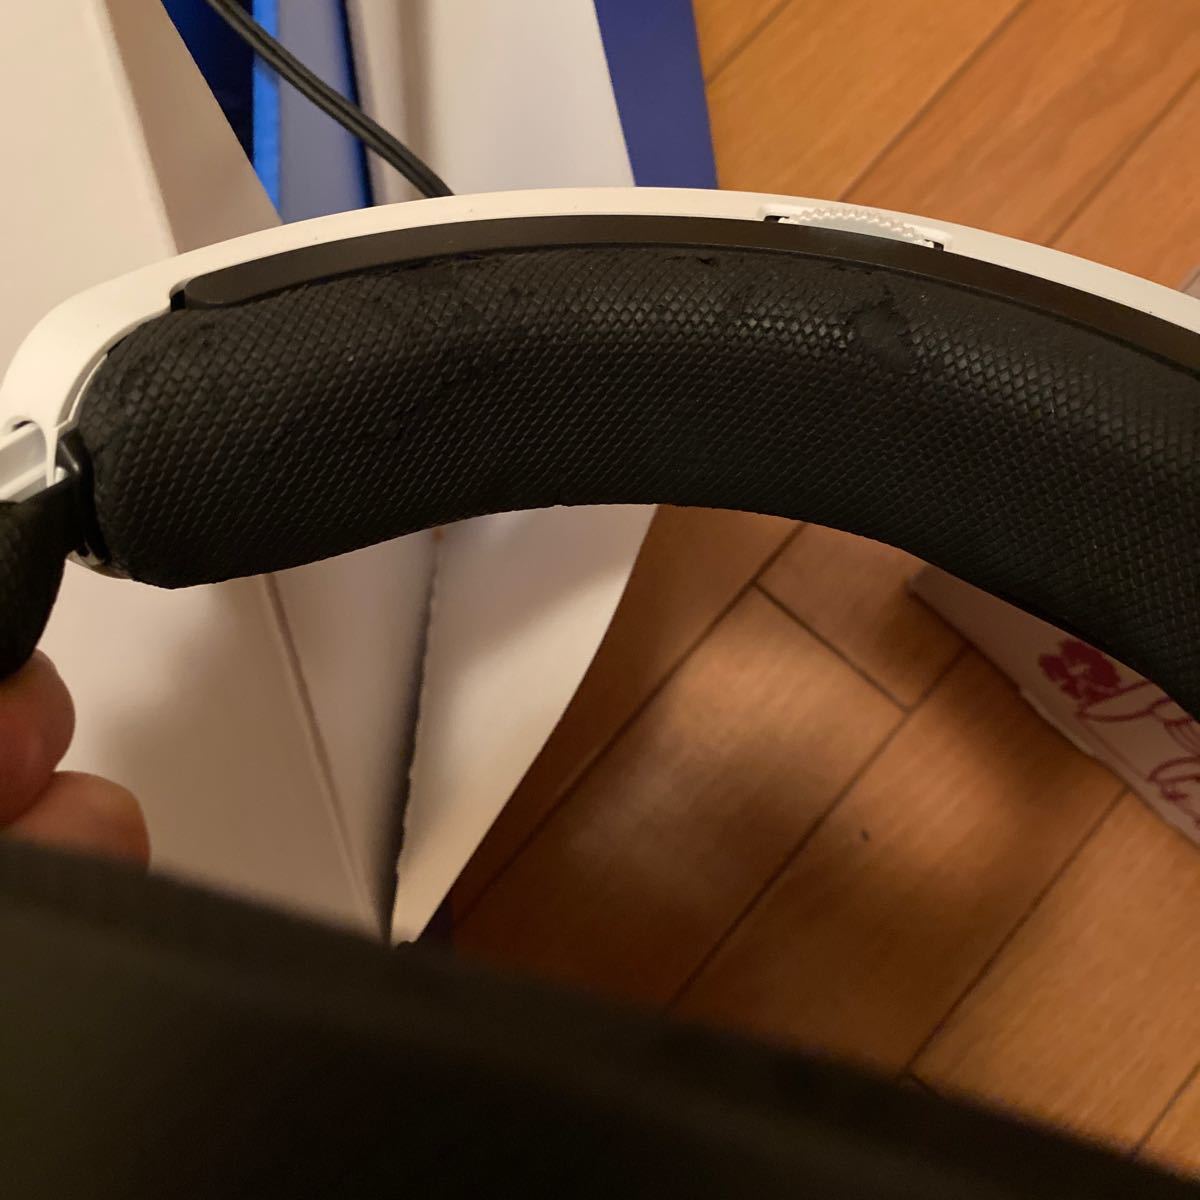 PlayStation VR CUHJ-16003 